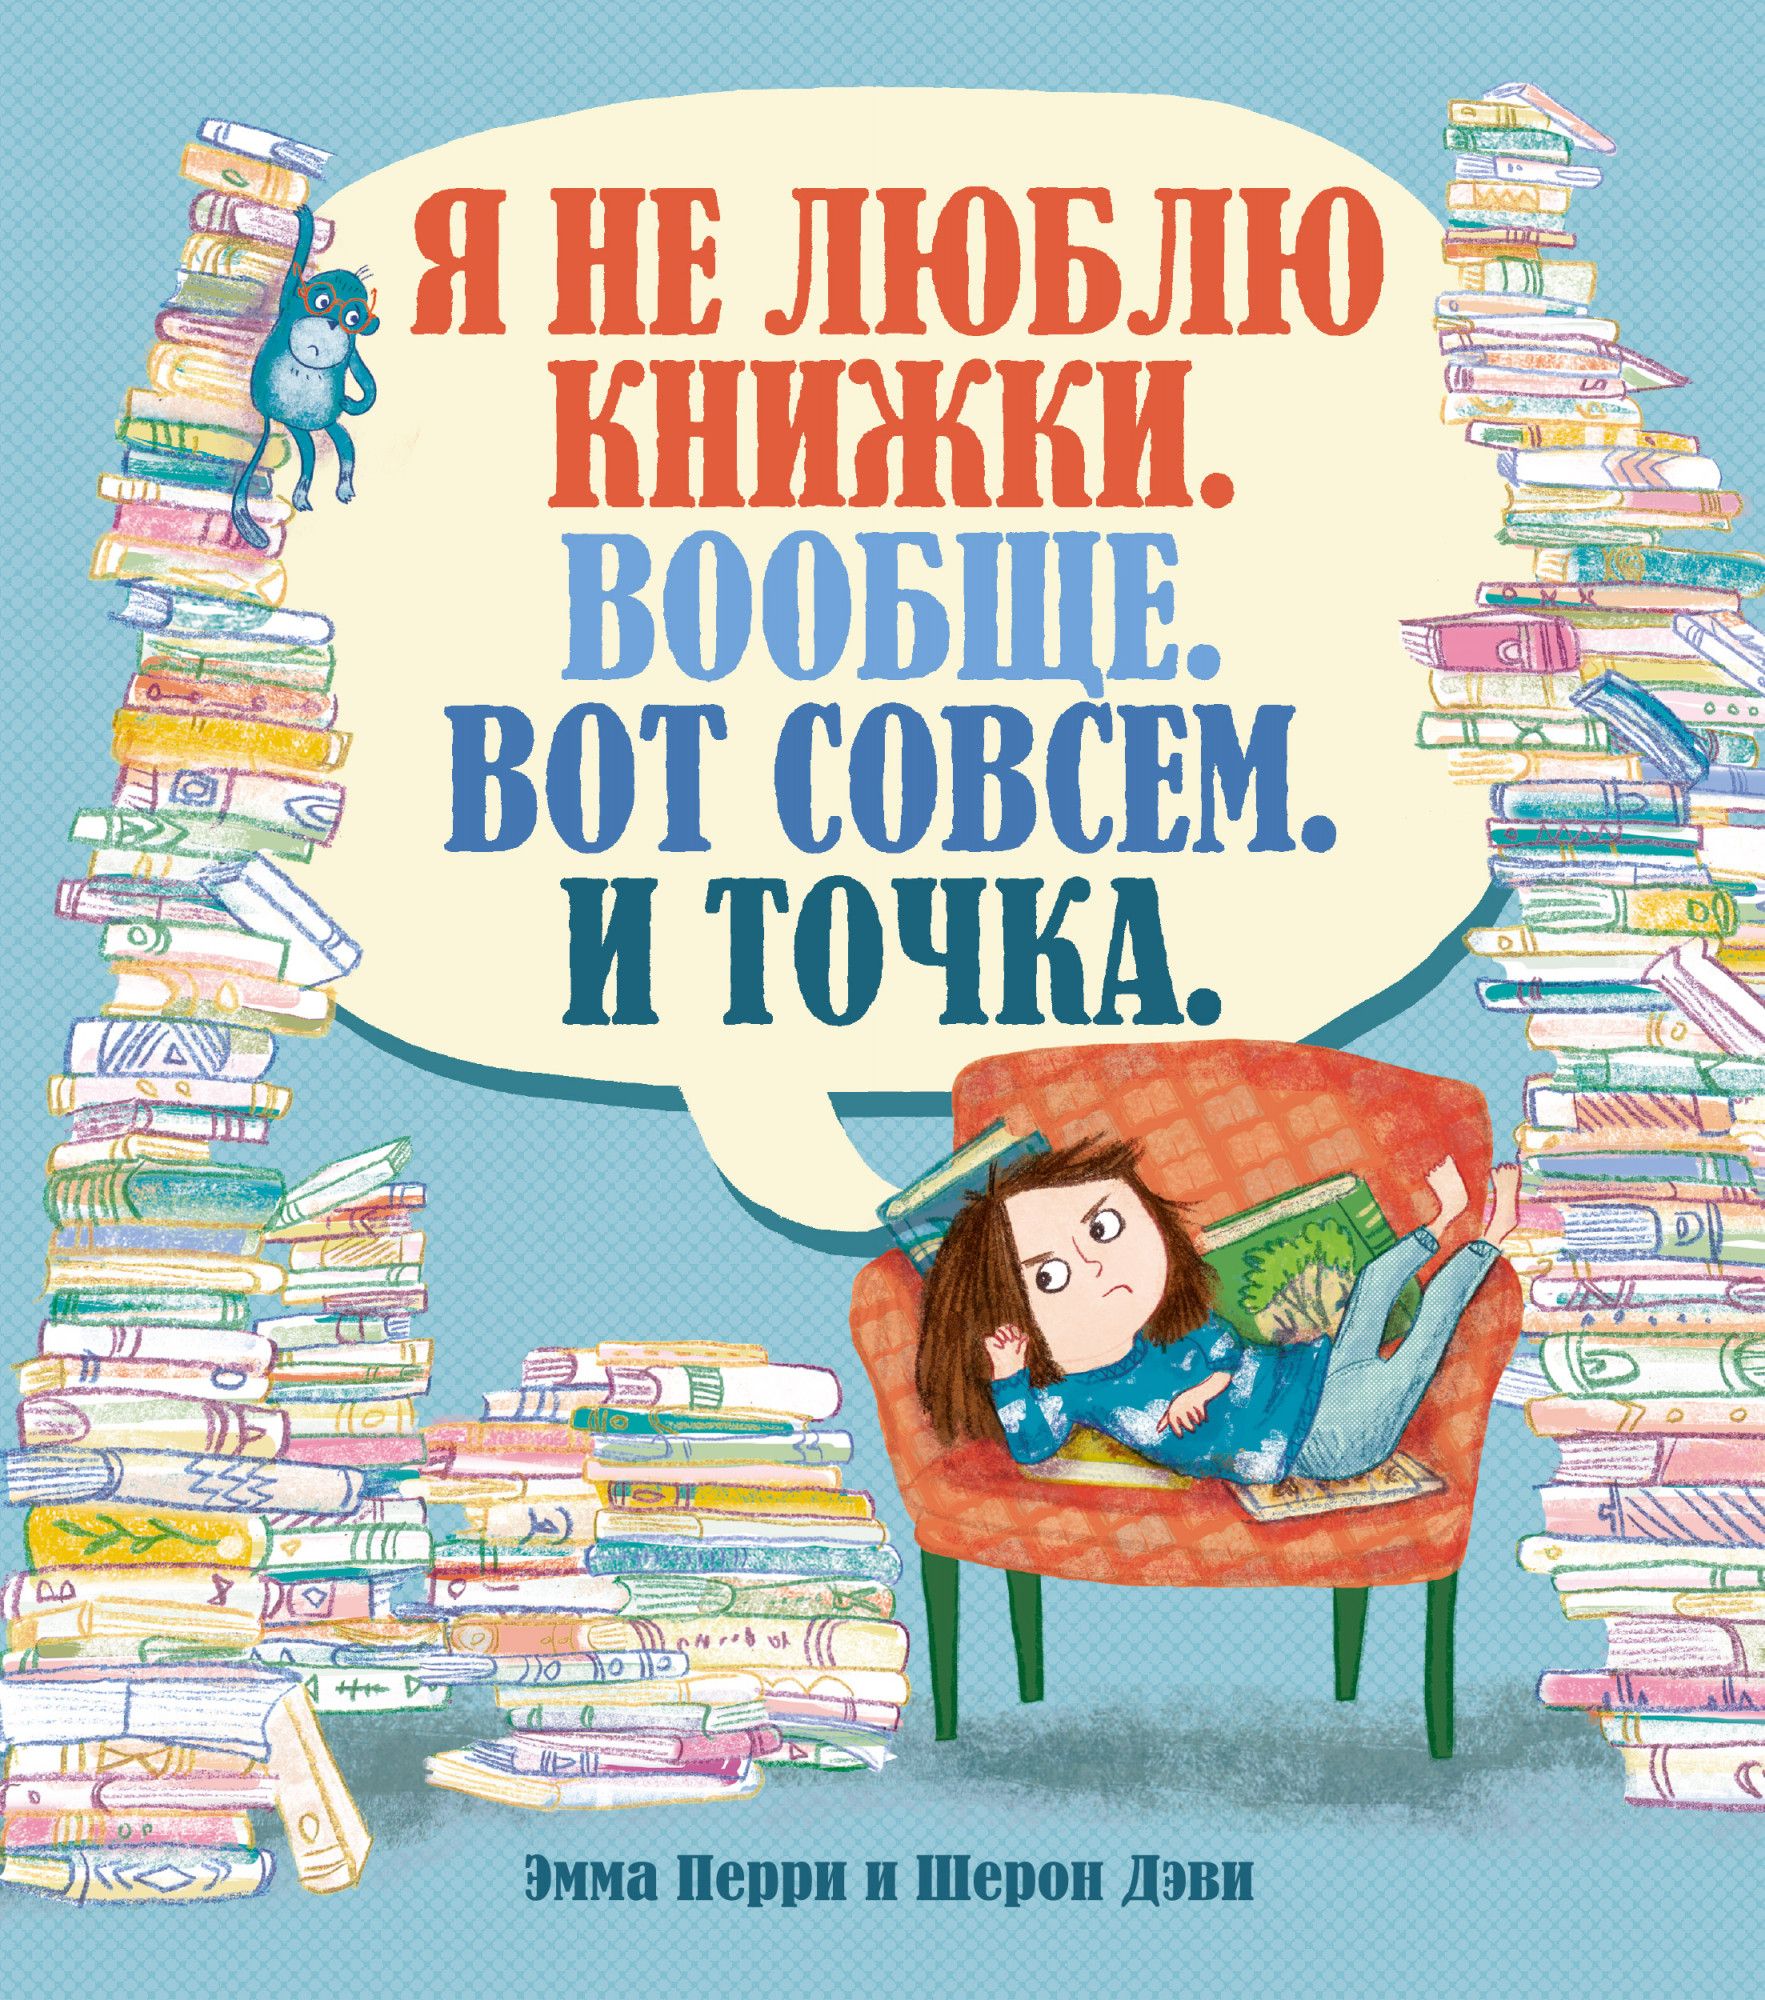 Мне нравятся книги где. Я люблю книги. Я люблю читать книги. Я не люблю книги. Я не люблю книжки вообще вот совсем и точка.